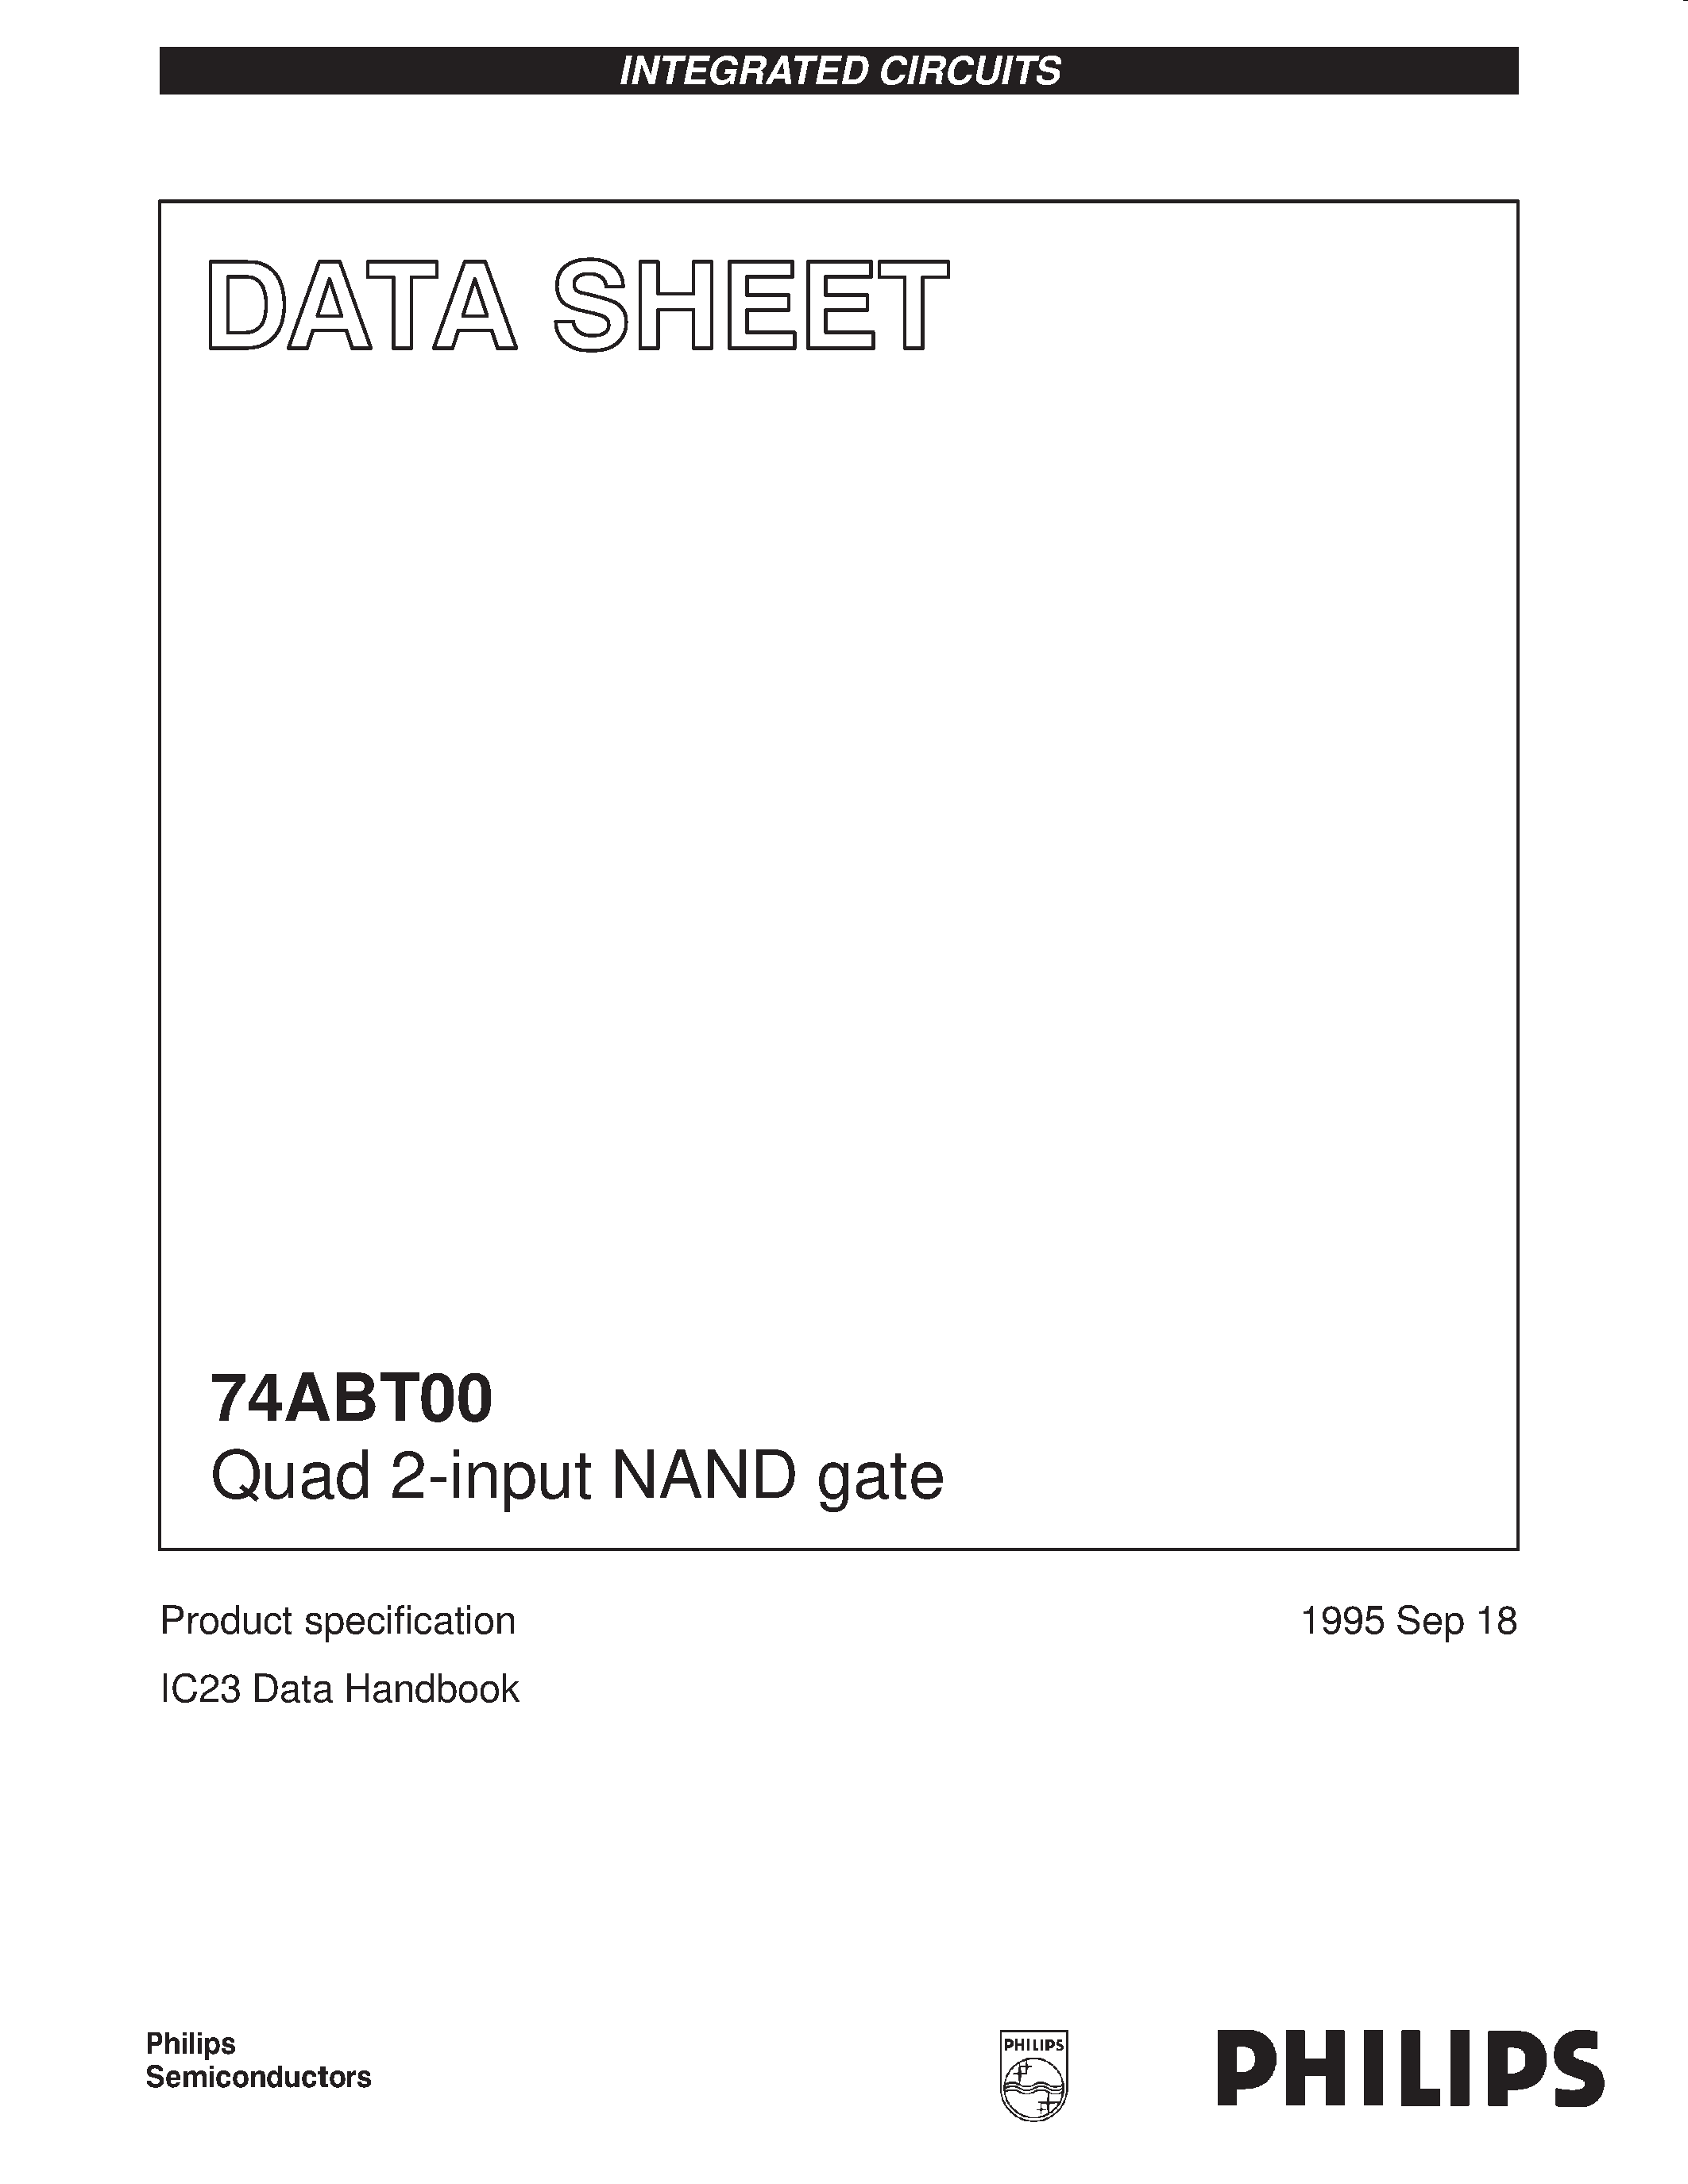 Даташит 74ABT00D - Quad 2-input NAND gate страница 1